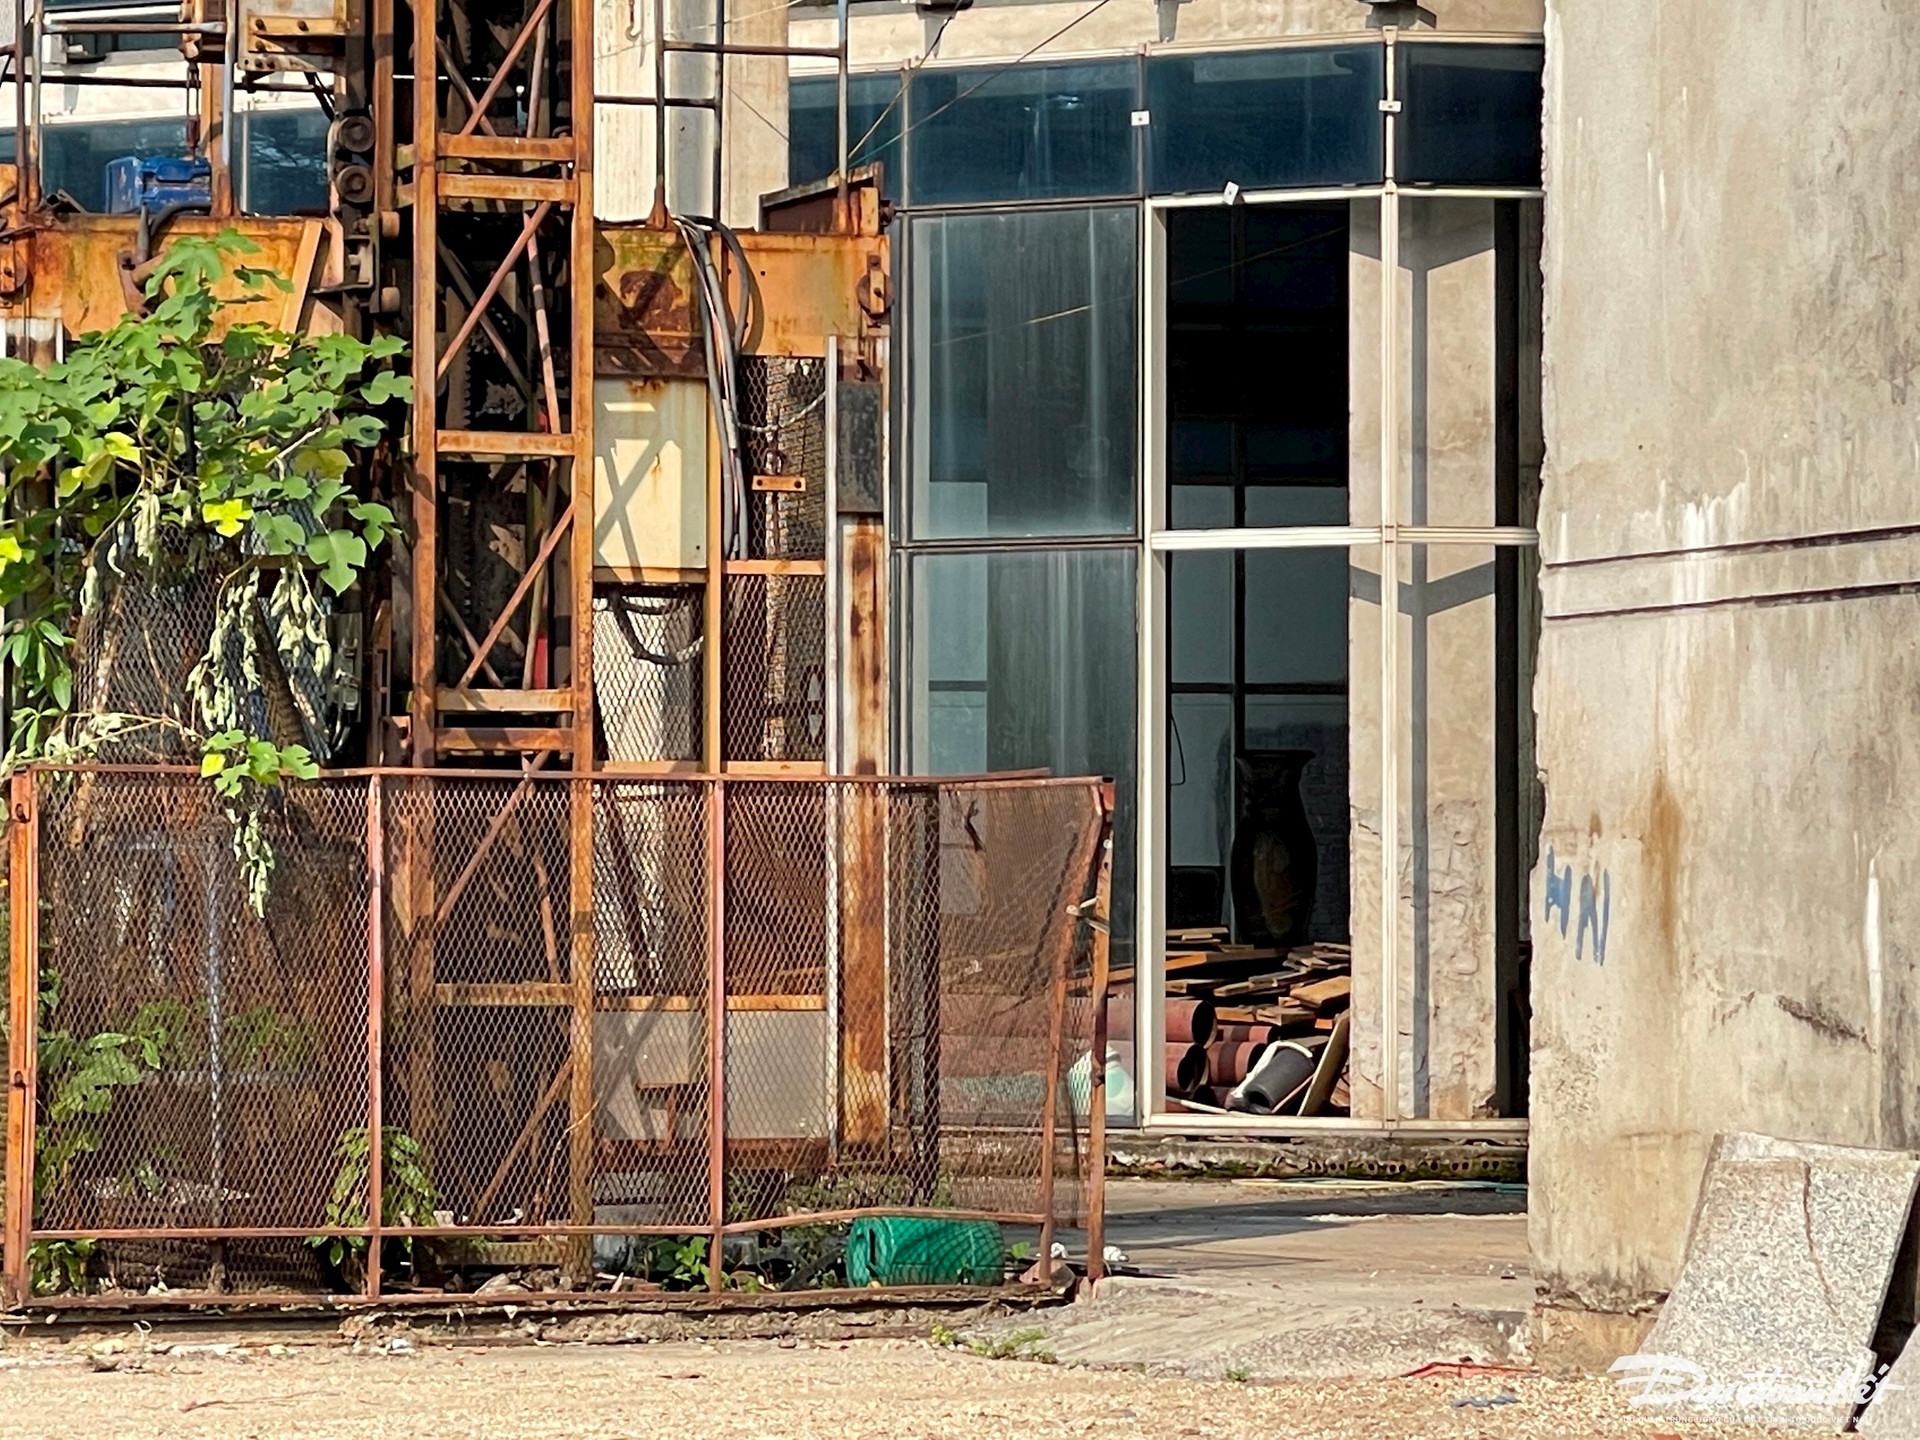 Hà Nội: Bệnh viện quốc tế 50 triệu USD bị bỏ hoang hơn 2 thập kỷ - Ảnh 11